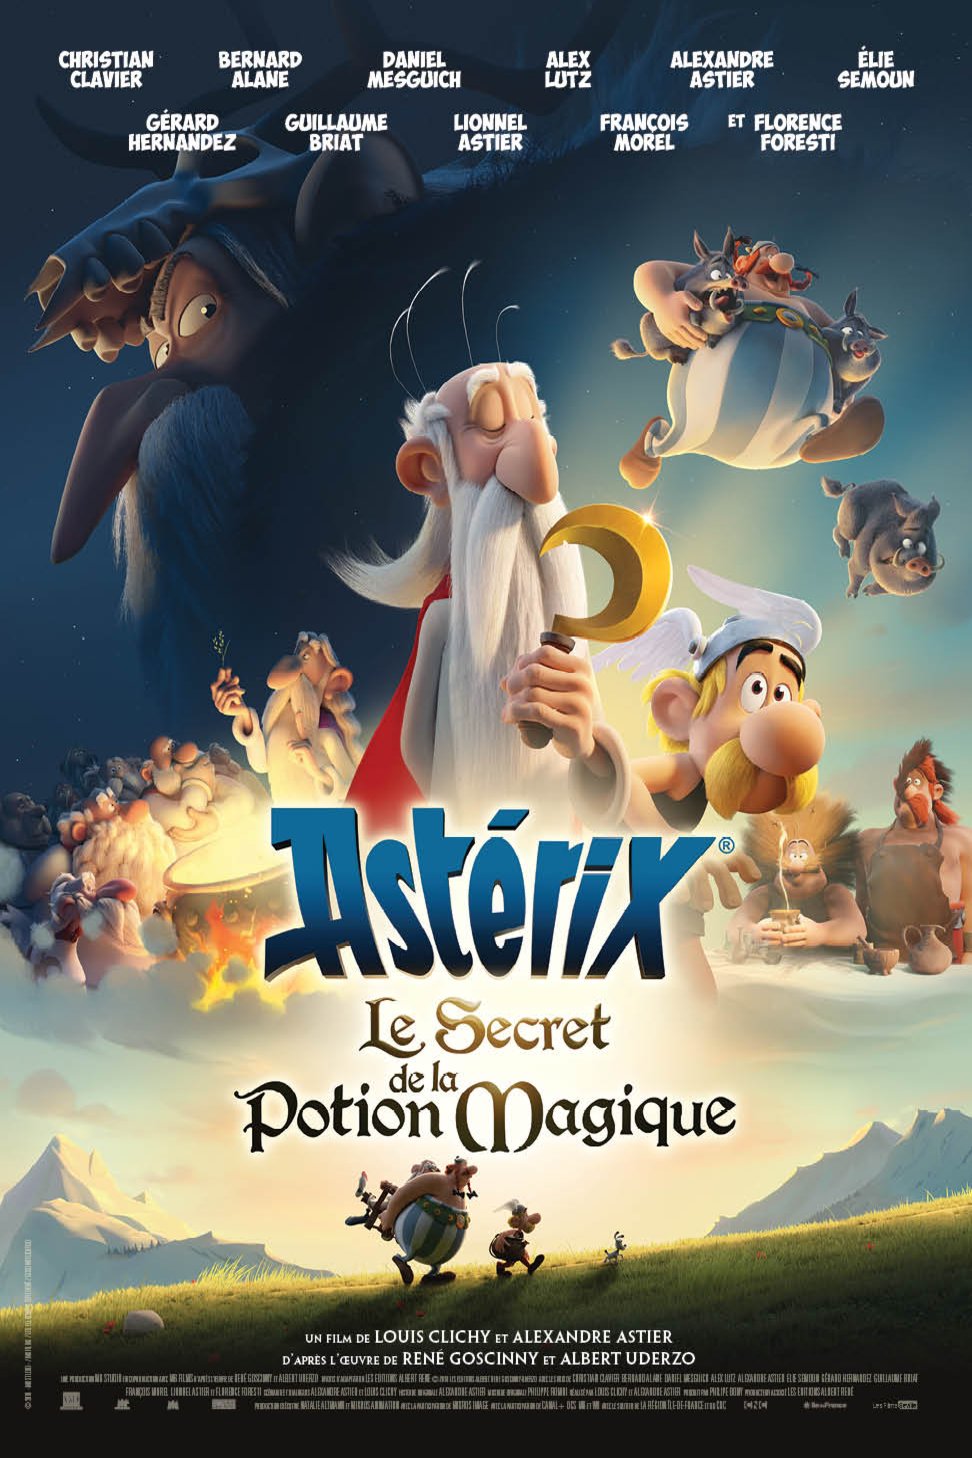 L'affiche du film Astérix: Le secret de la potion magique